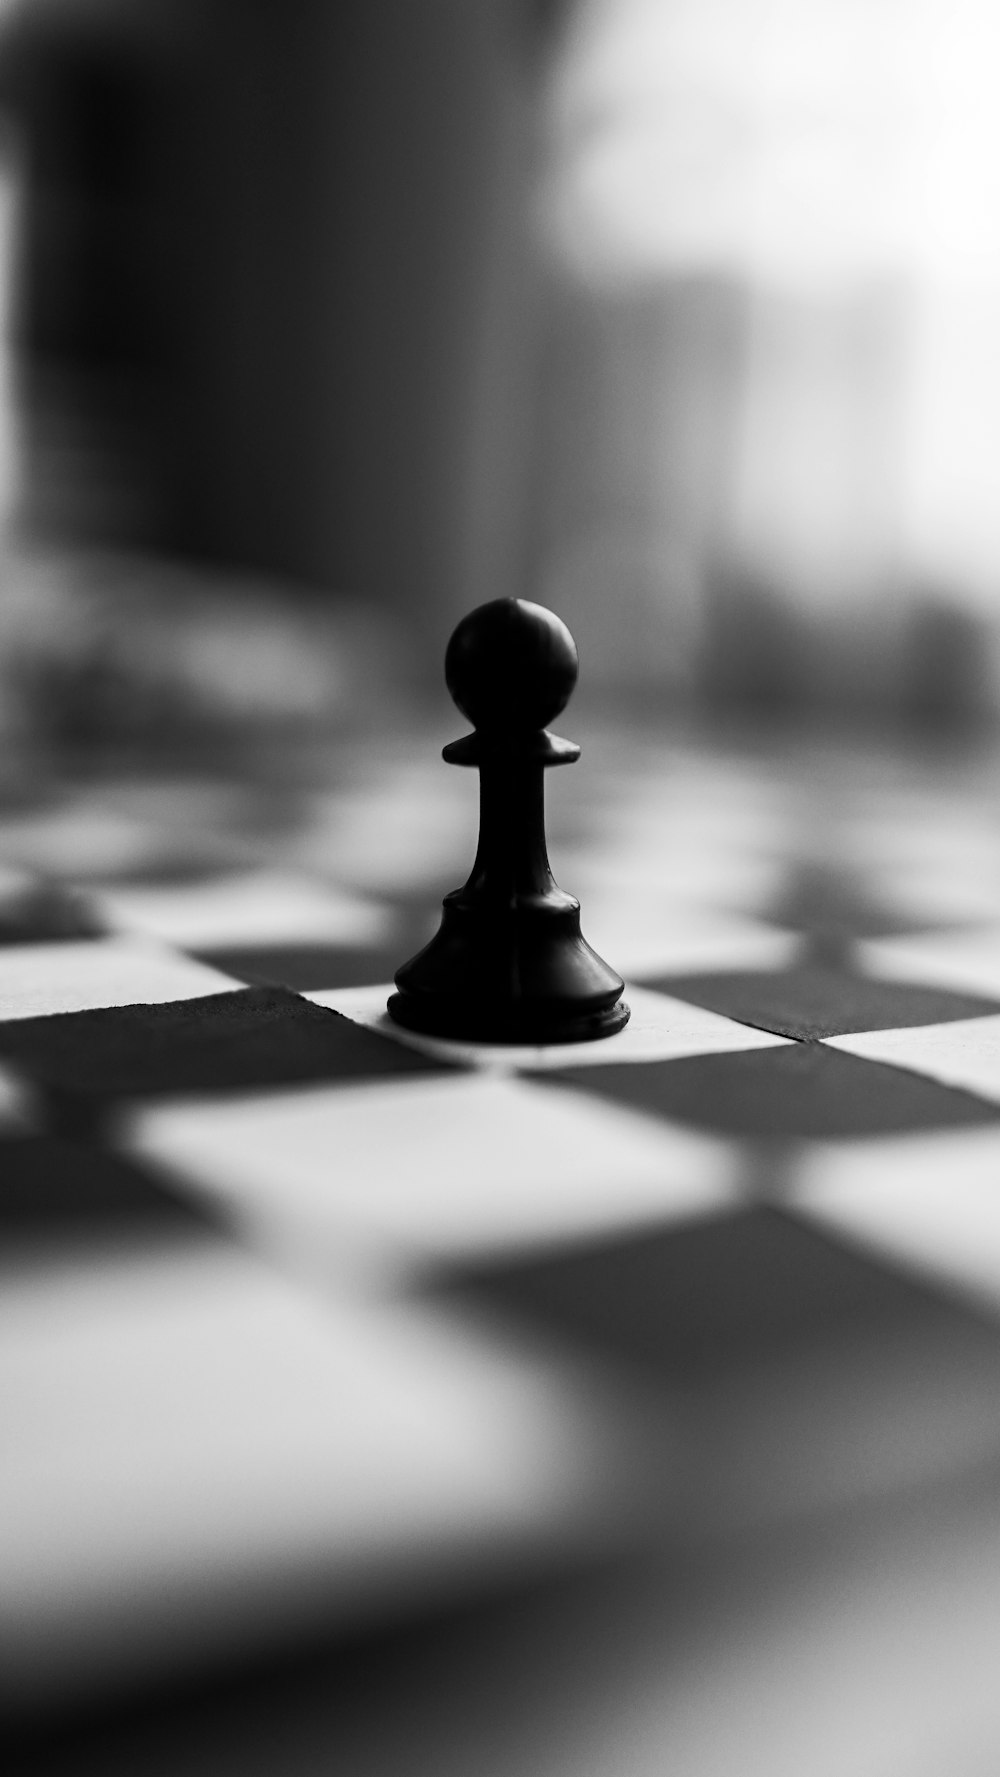 흰색과 검은색 체크 무늬 직물에 검은색 체스 조각